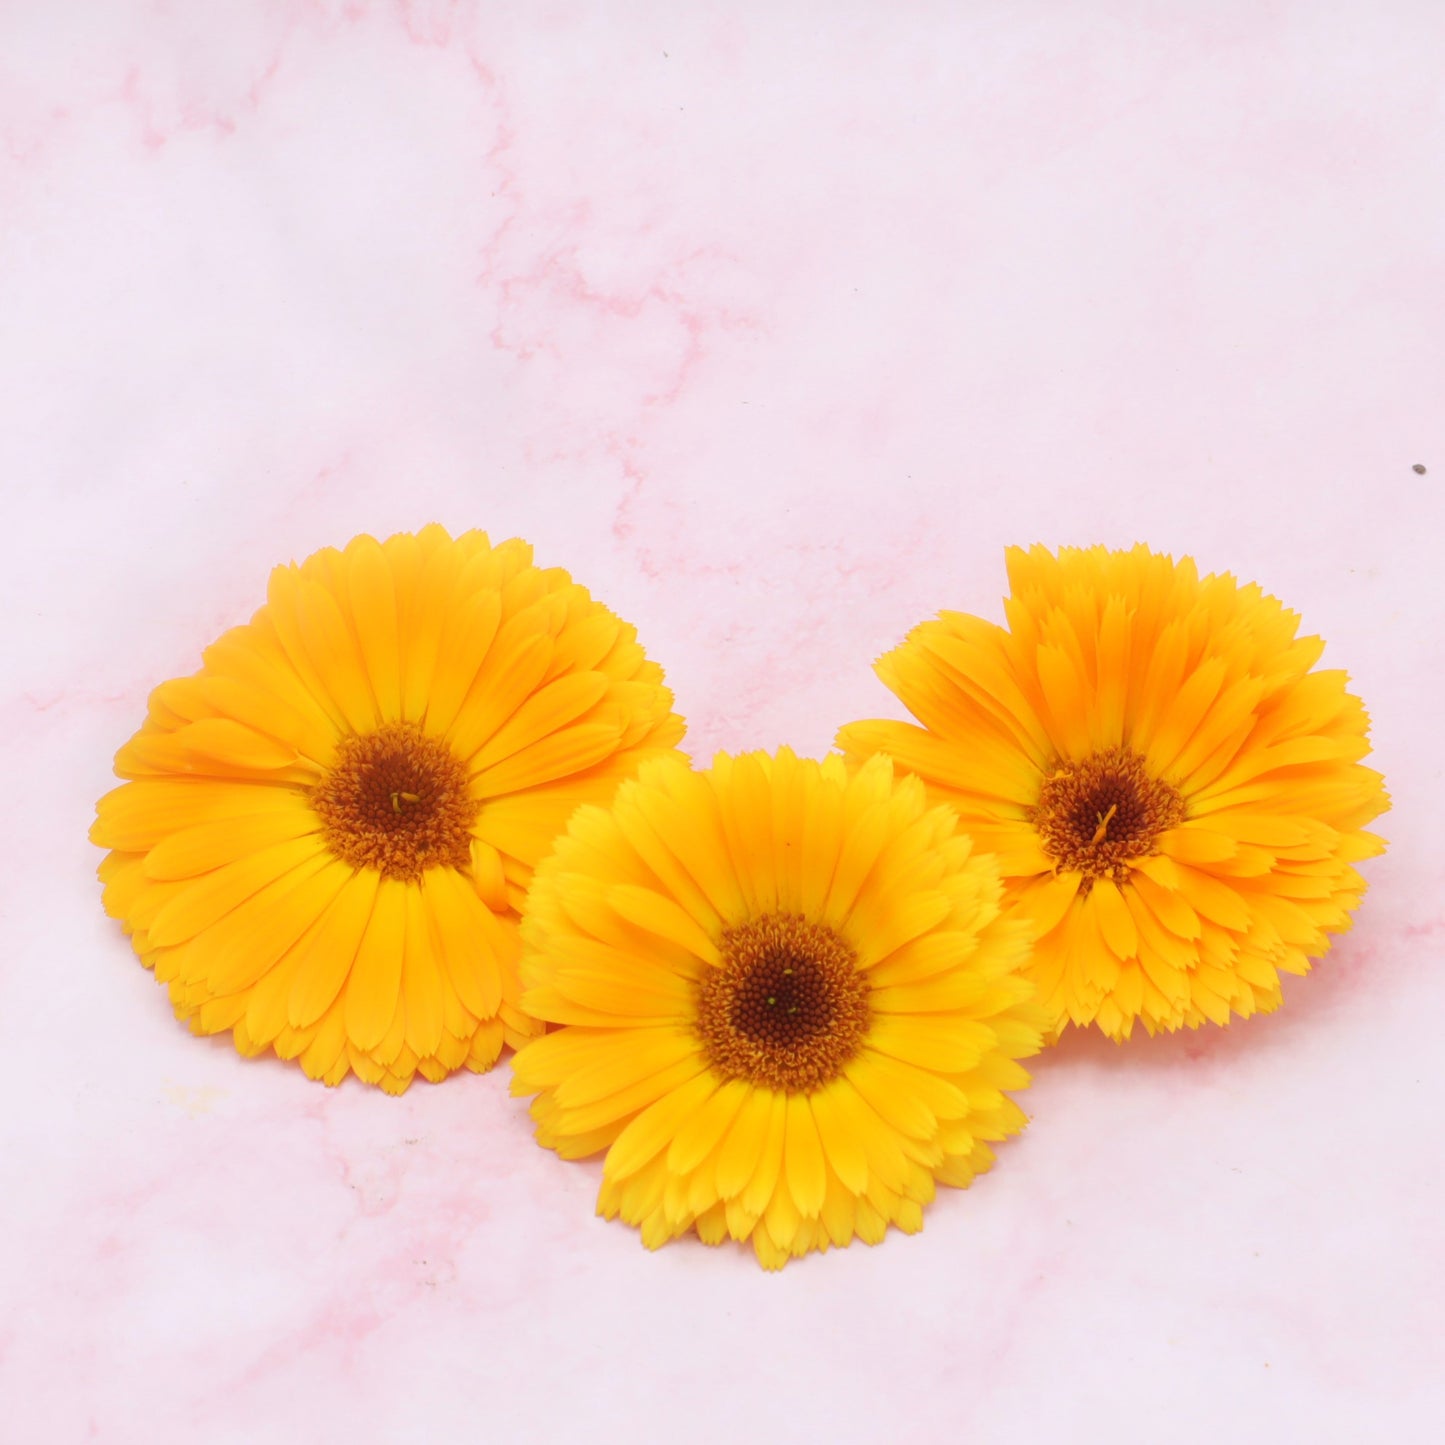 Oranje Goudsbloem eetbare bloemen Floral Delight eetbare bloemenshop